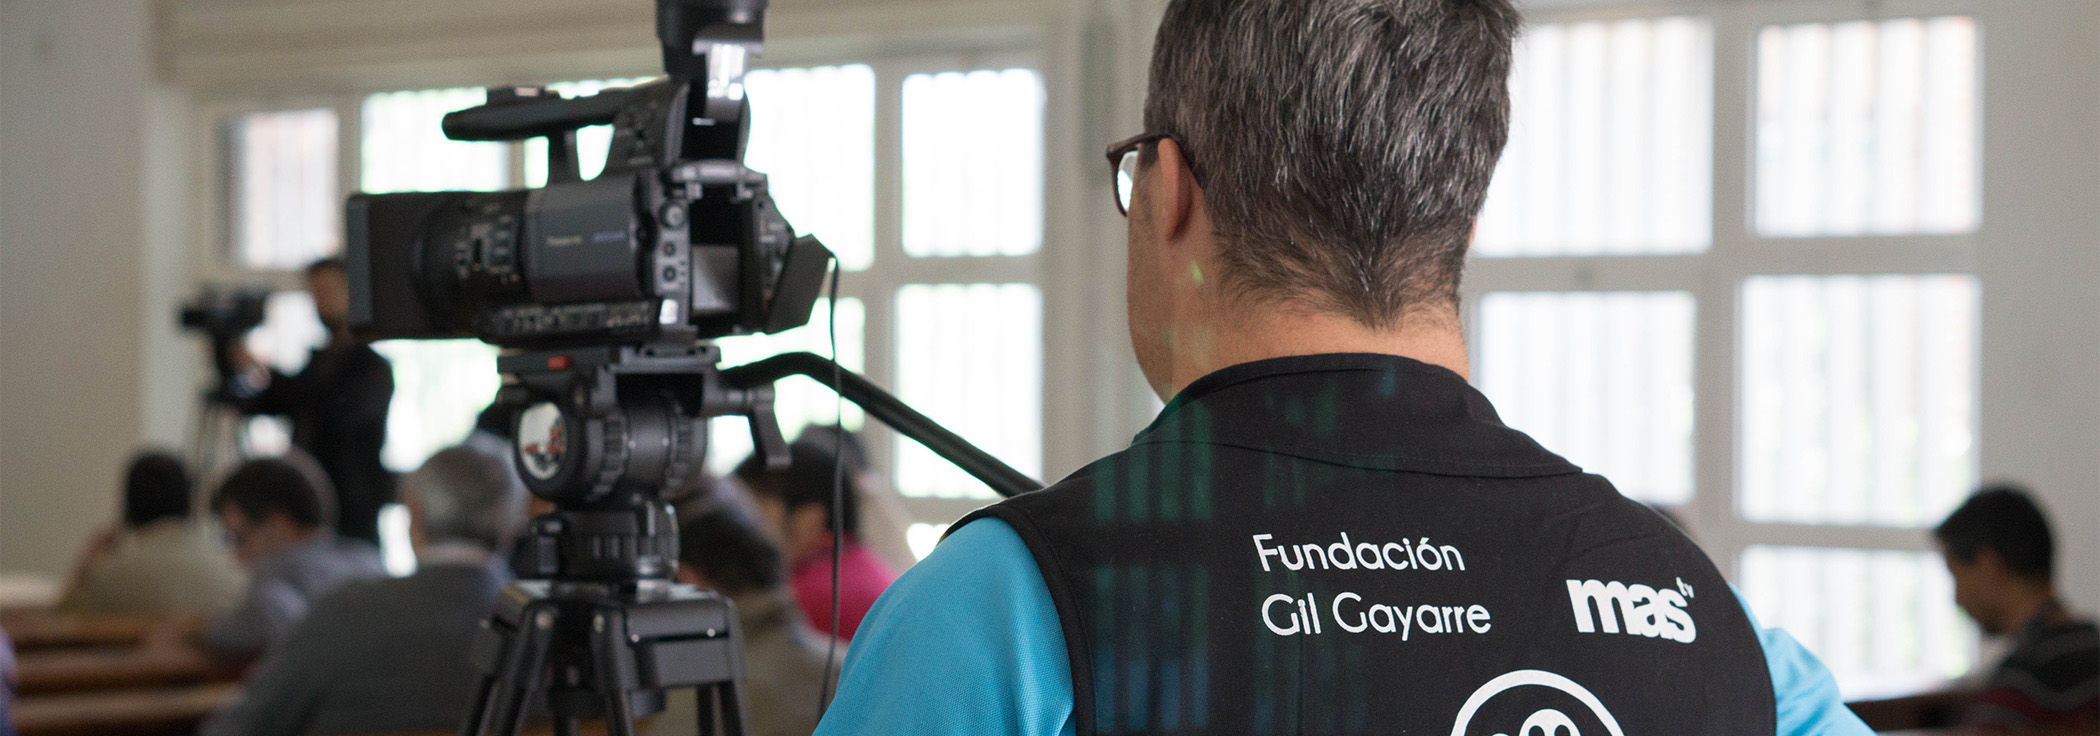 Enfocando el futuro - es un proyecto de Fundación Gil Gayarre en colaboración con Fundación Gmp para la creación de empleo para personas con discapacidad intelectual en el sector audiovisual